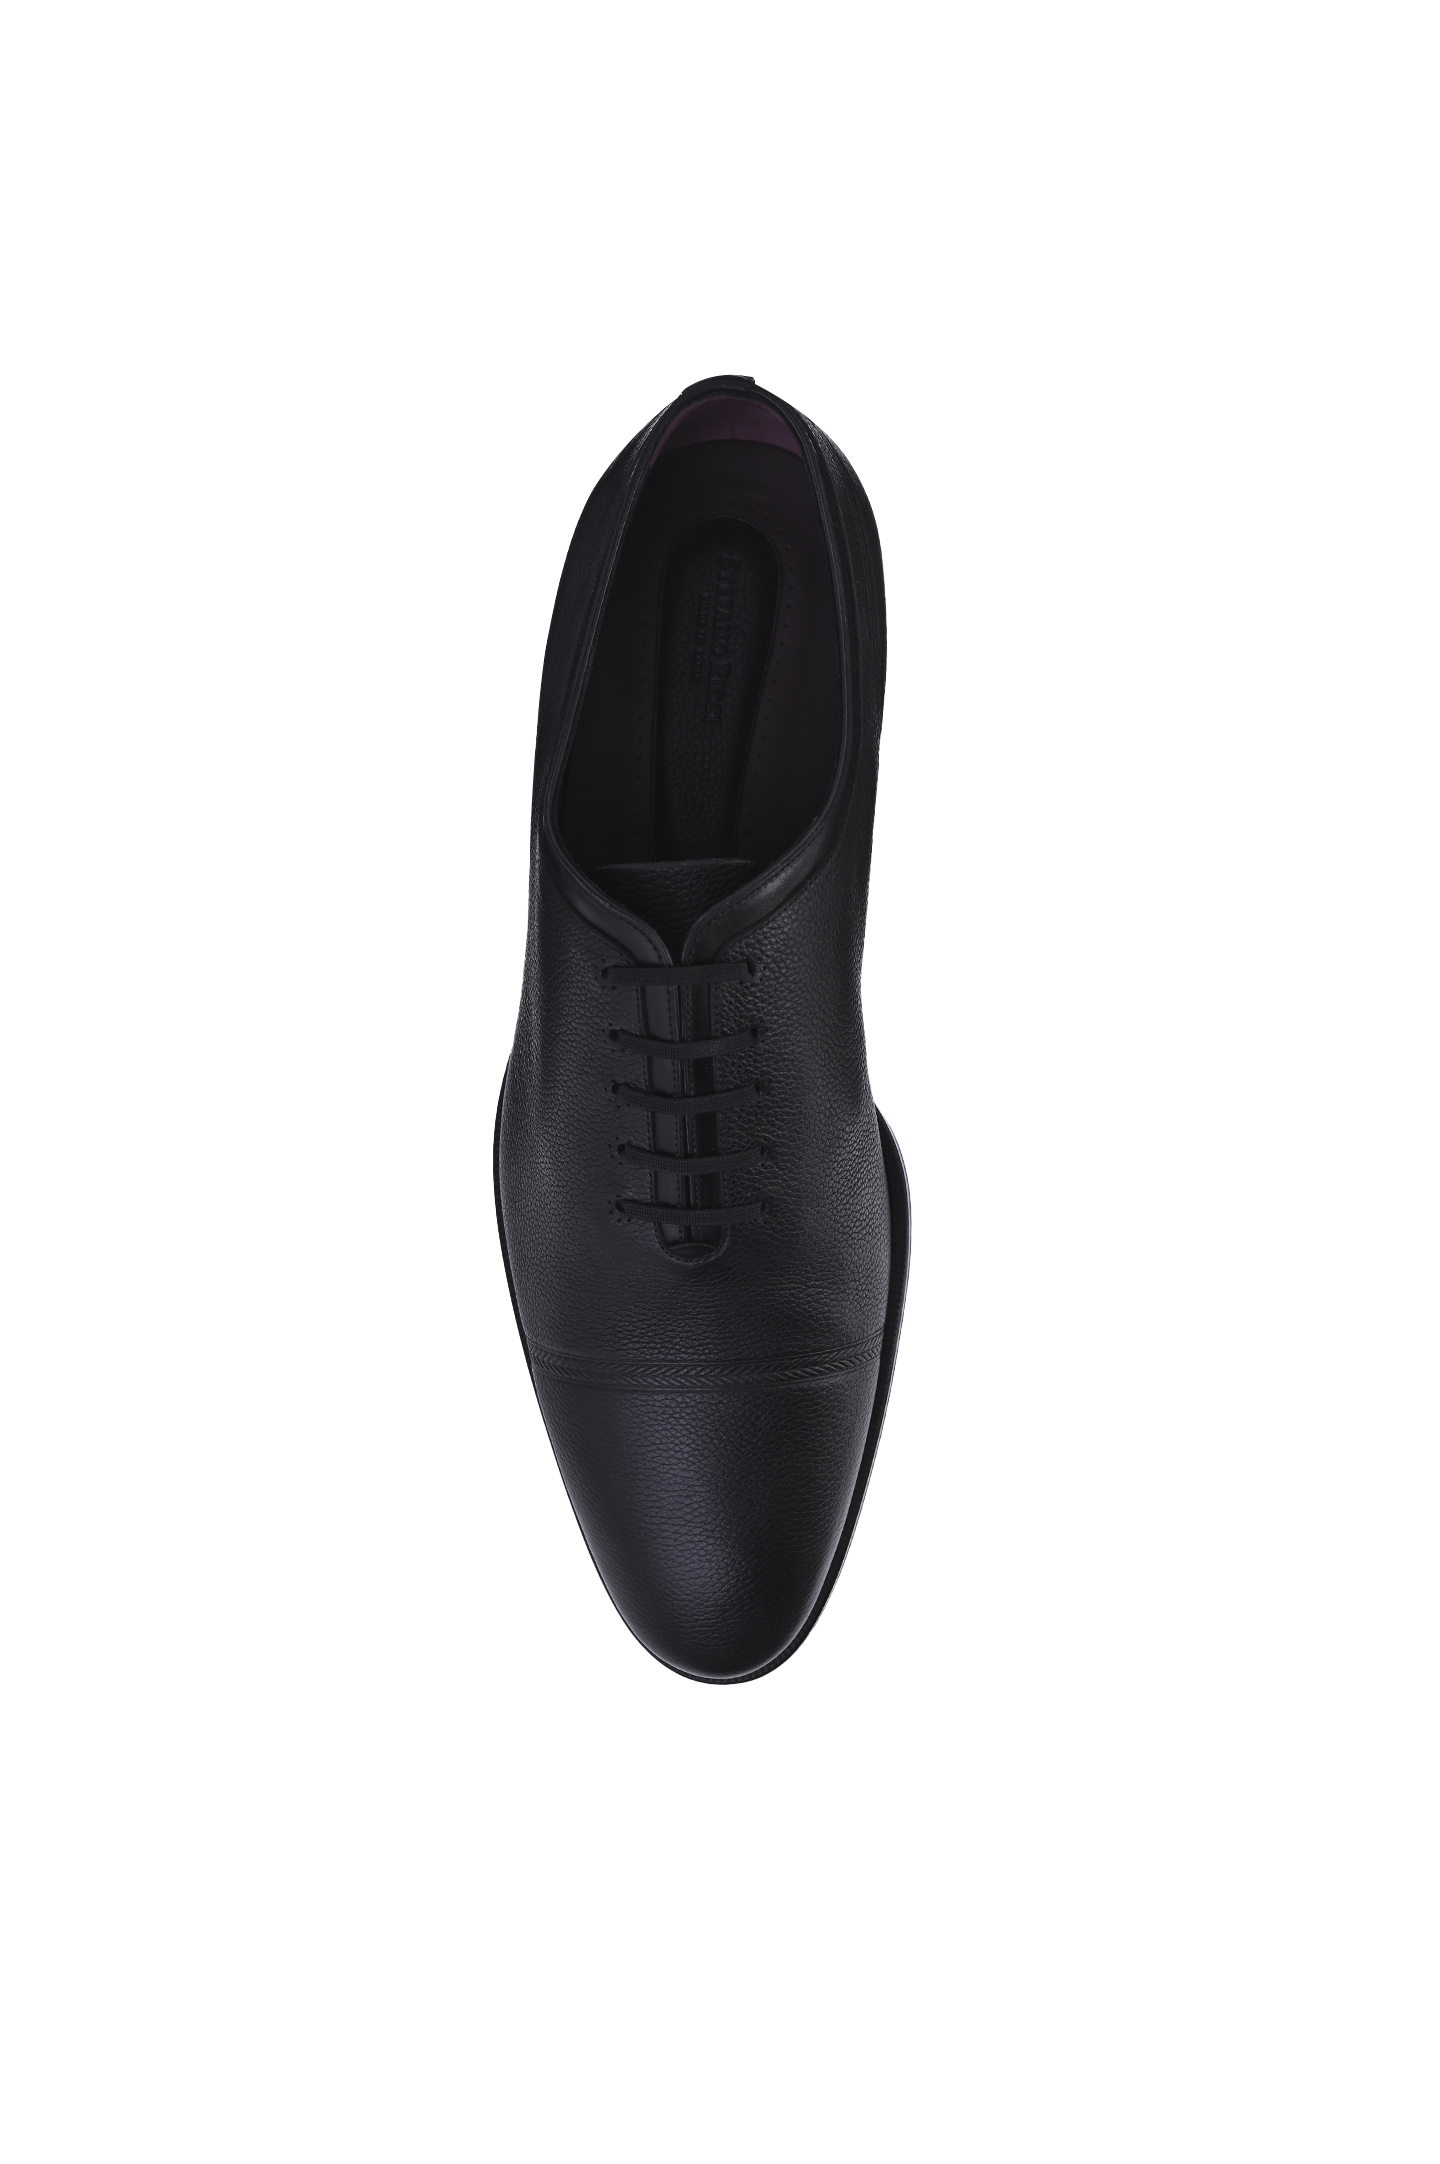 Туфли STEFANO RICCI UN08_C6206 MRVS N999, цвет: Черный, Мужской